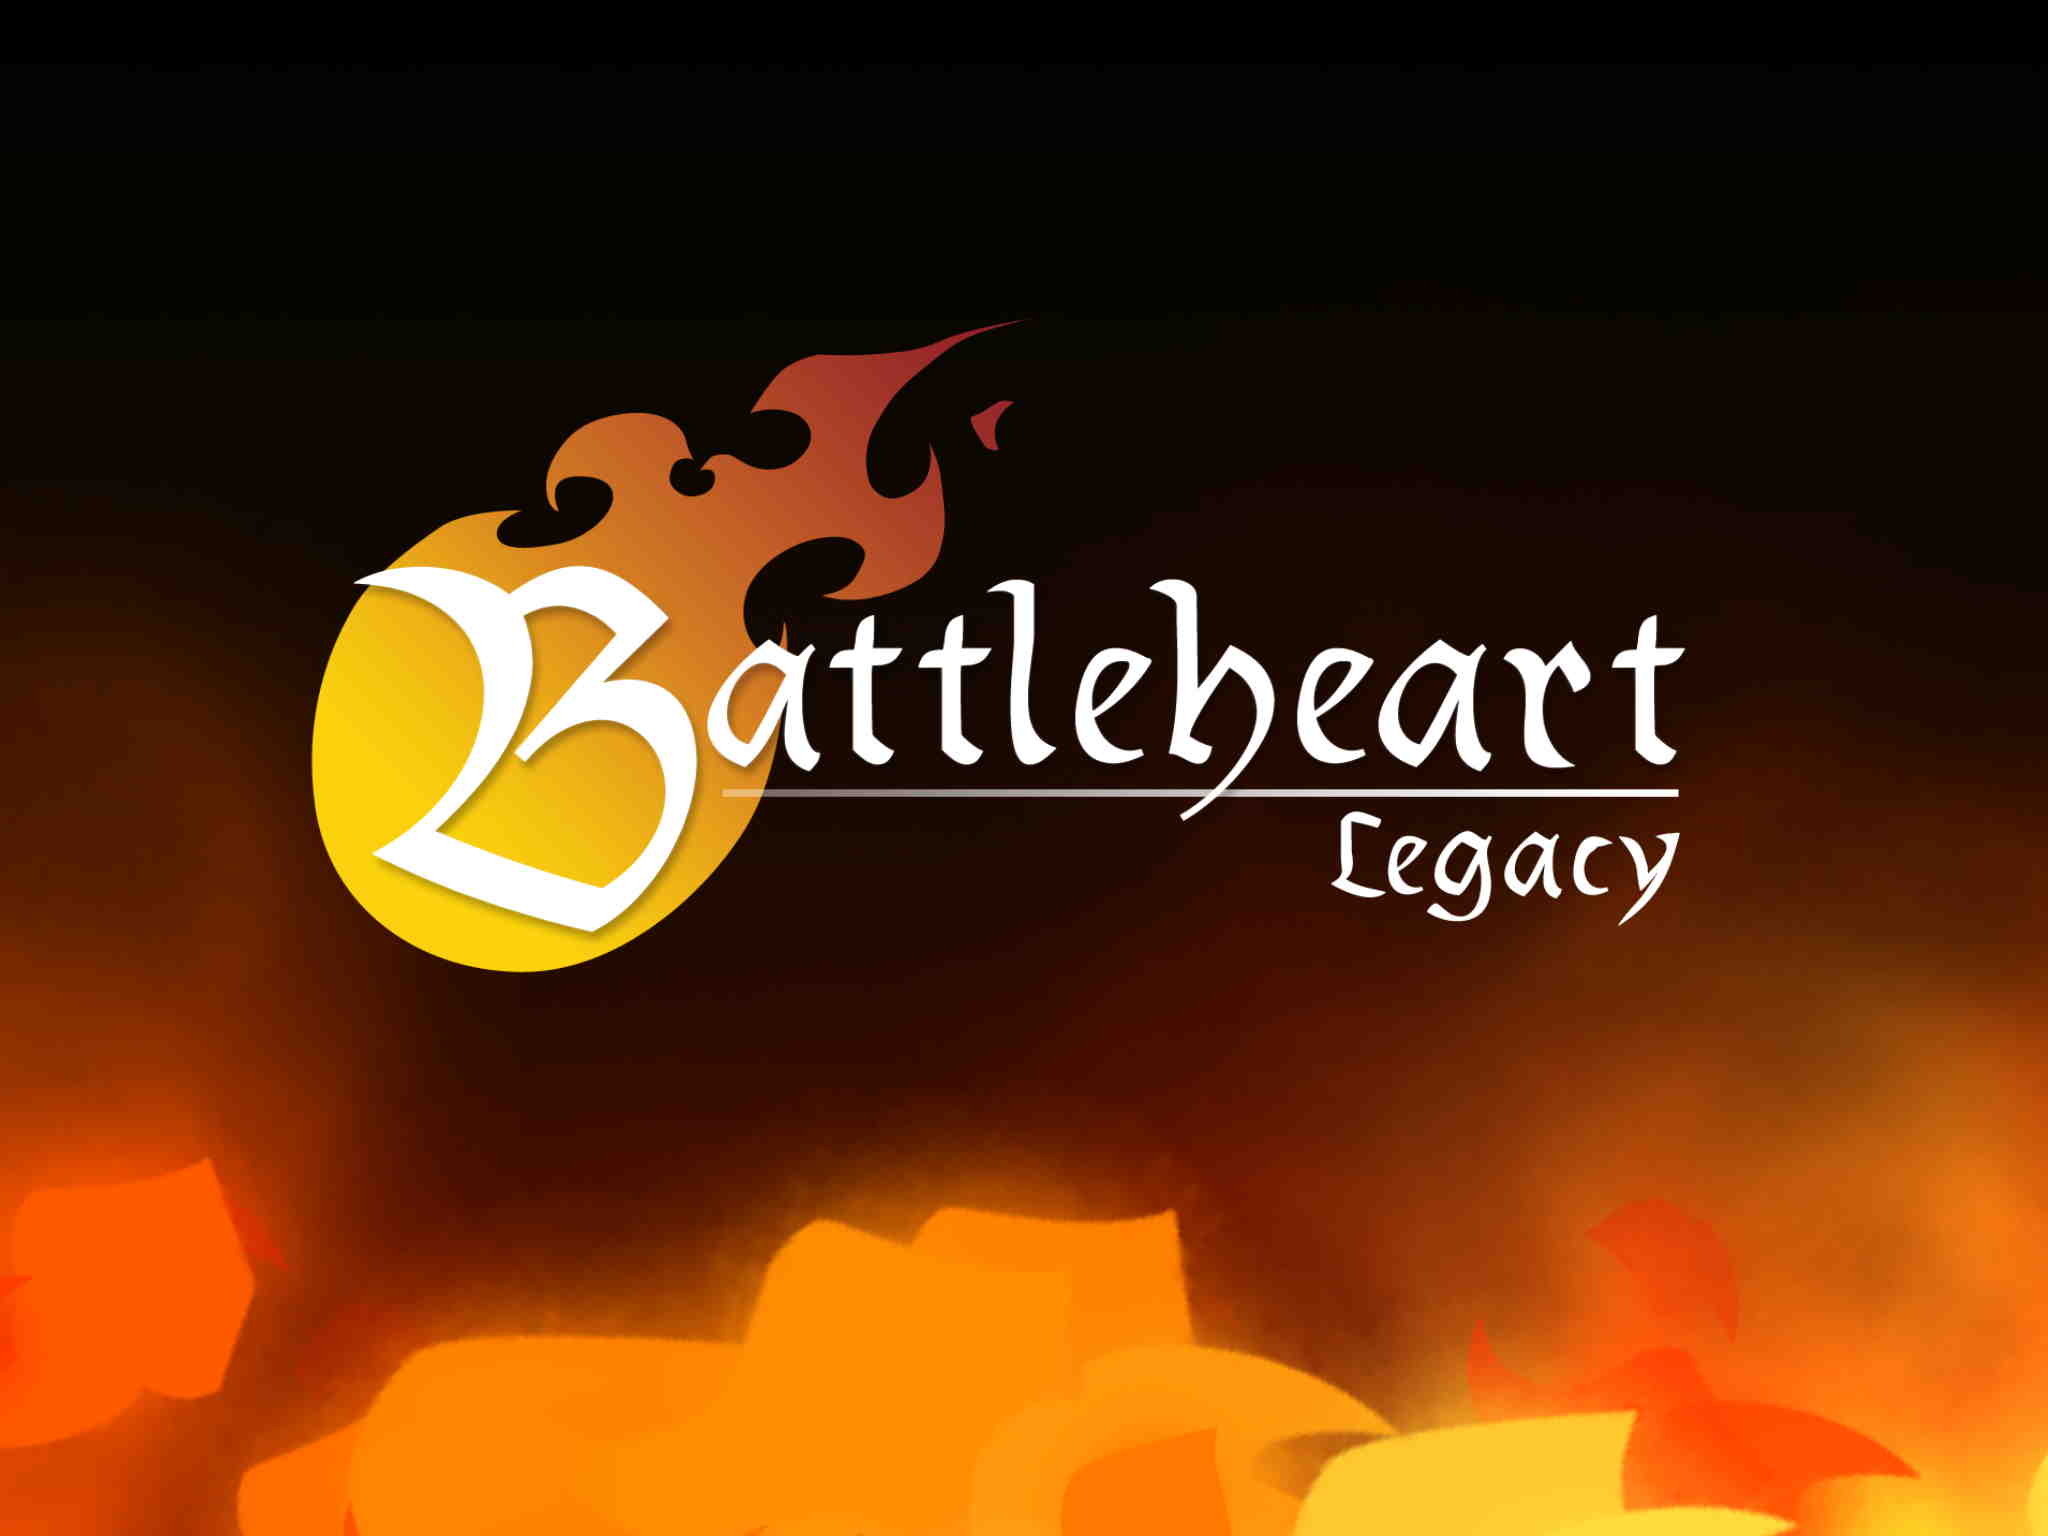 Battleheart_Legacy_01